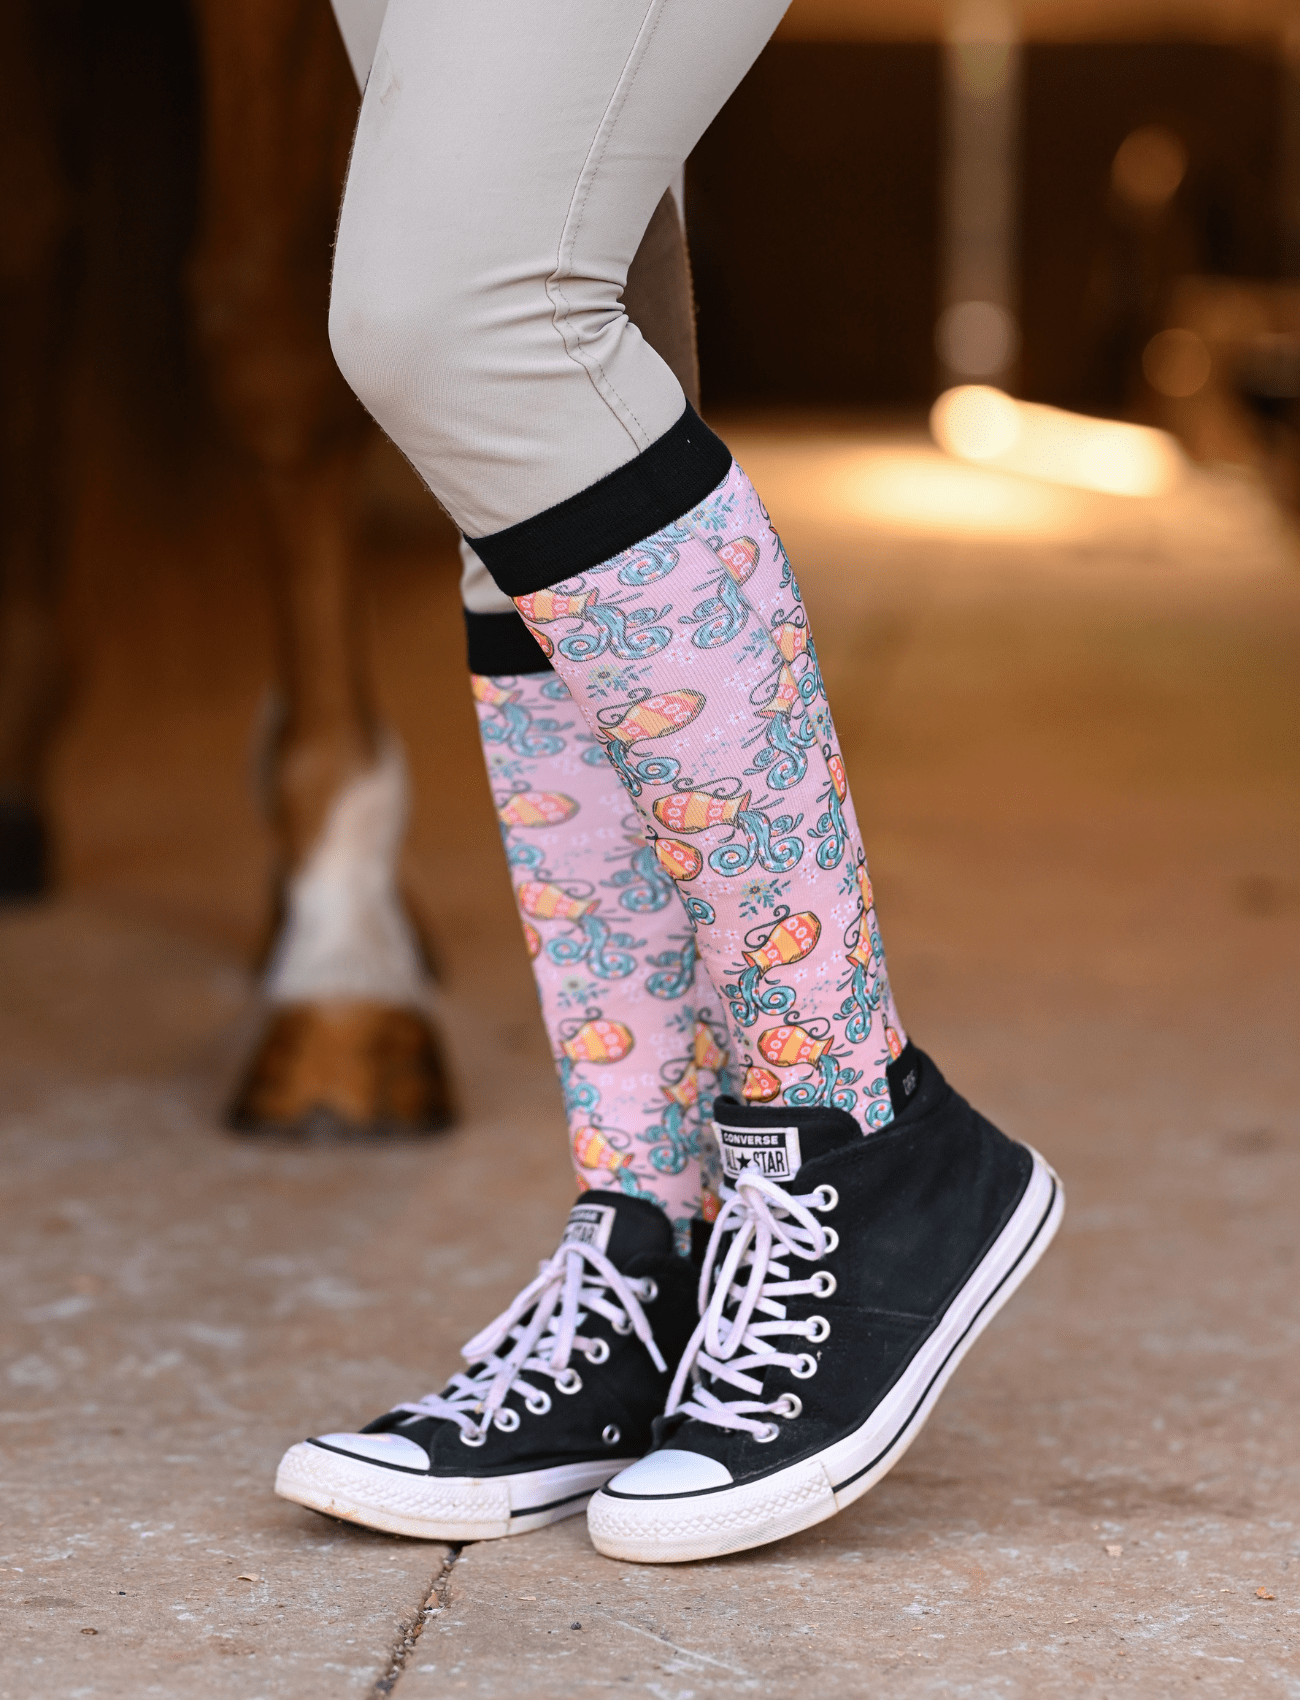 D&S LIMITED EDITION Limited Edition Limited Pretty Aquarius Socks equestrian boot socks boot socks thin socks riding socks pattern socks tall socks funny socks knee high socks horse socks horse show socks